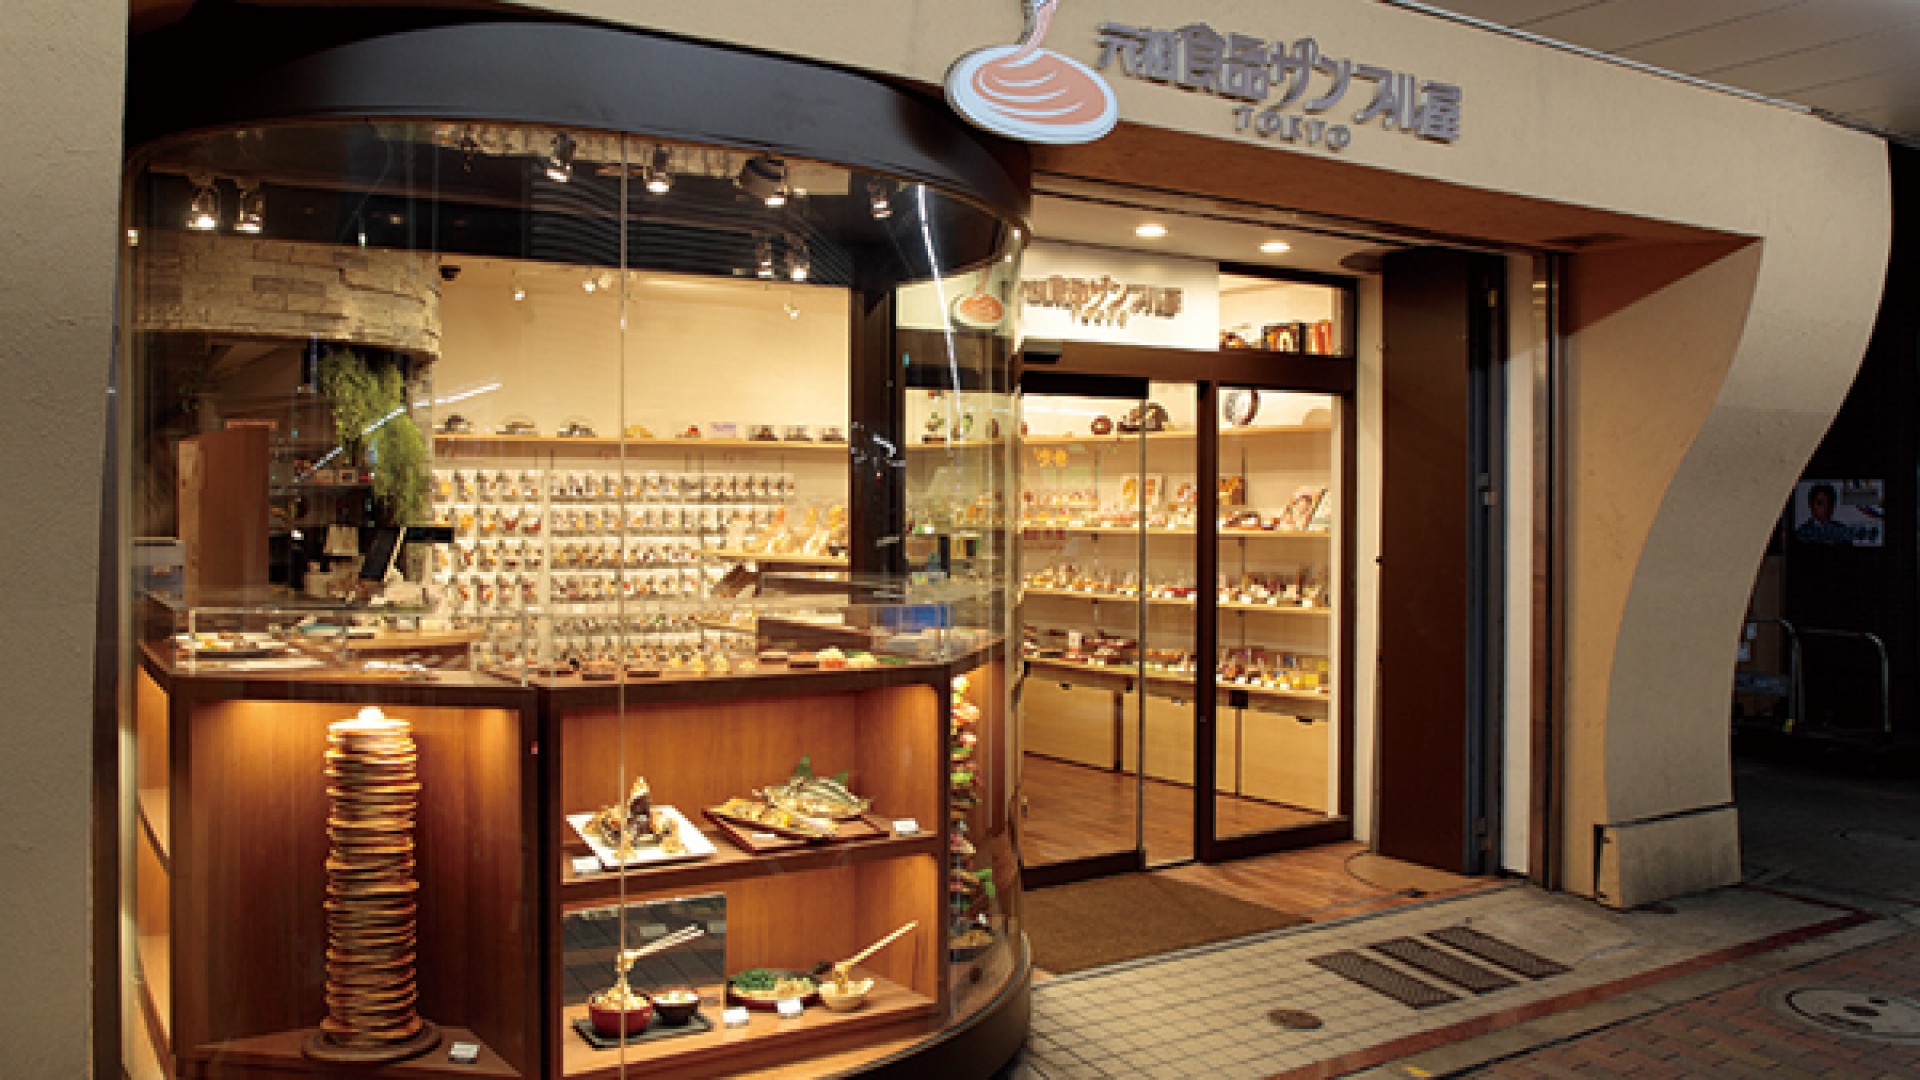 Cửa hàng mô hình Ganso Shokuhin, Kappabashi